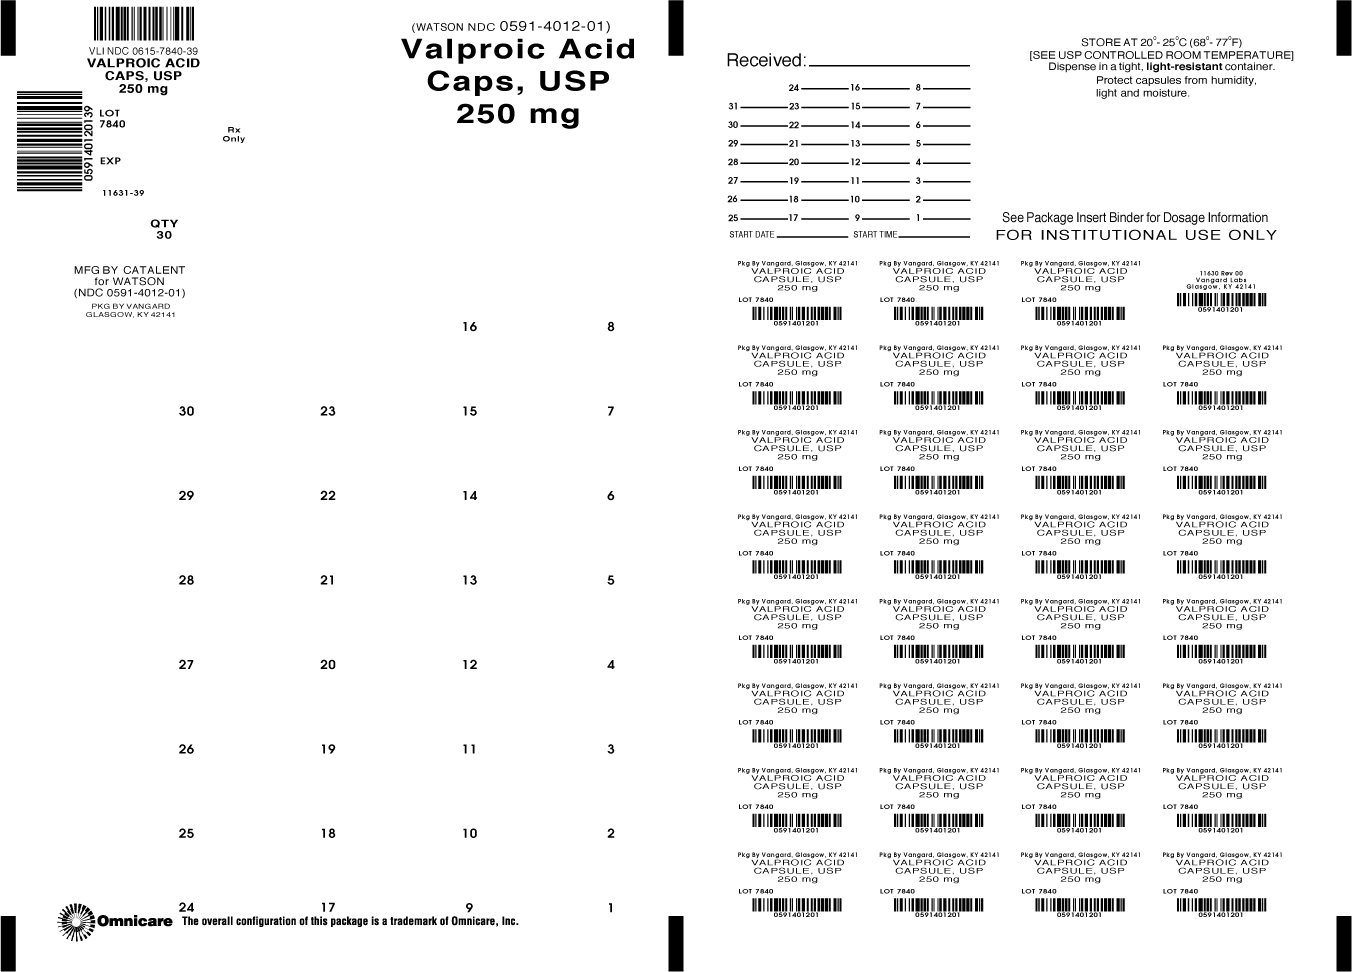 Principal Display Panel-Valproic Acid Caps, USP 250mg